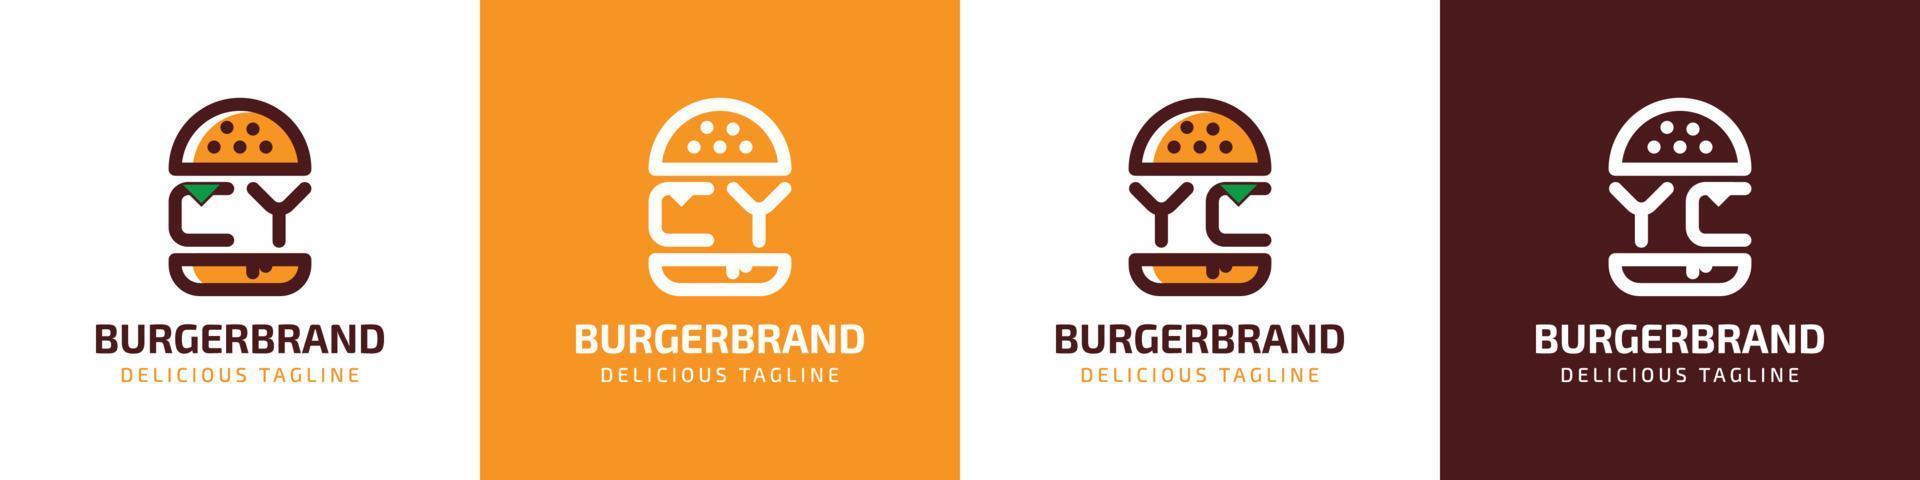 lettera cy e yc hamburger logo, adatto per qualunque attività commerciale relazionato per hamburger con cy o yc iniziali. vettore